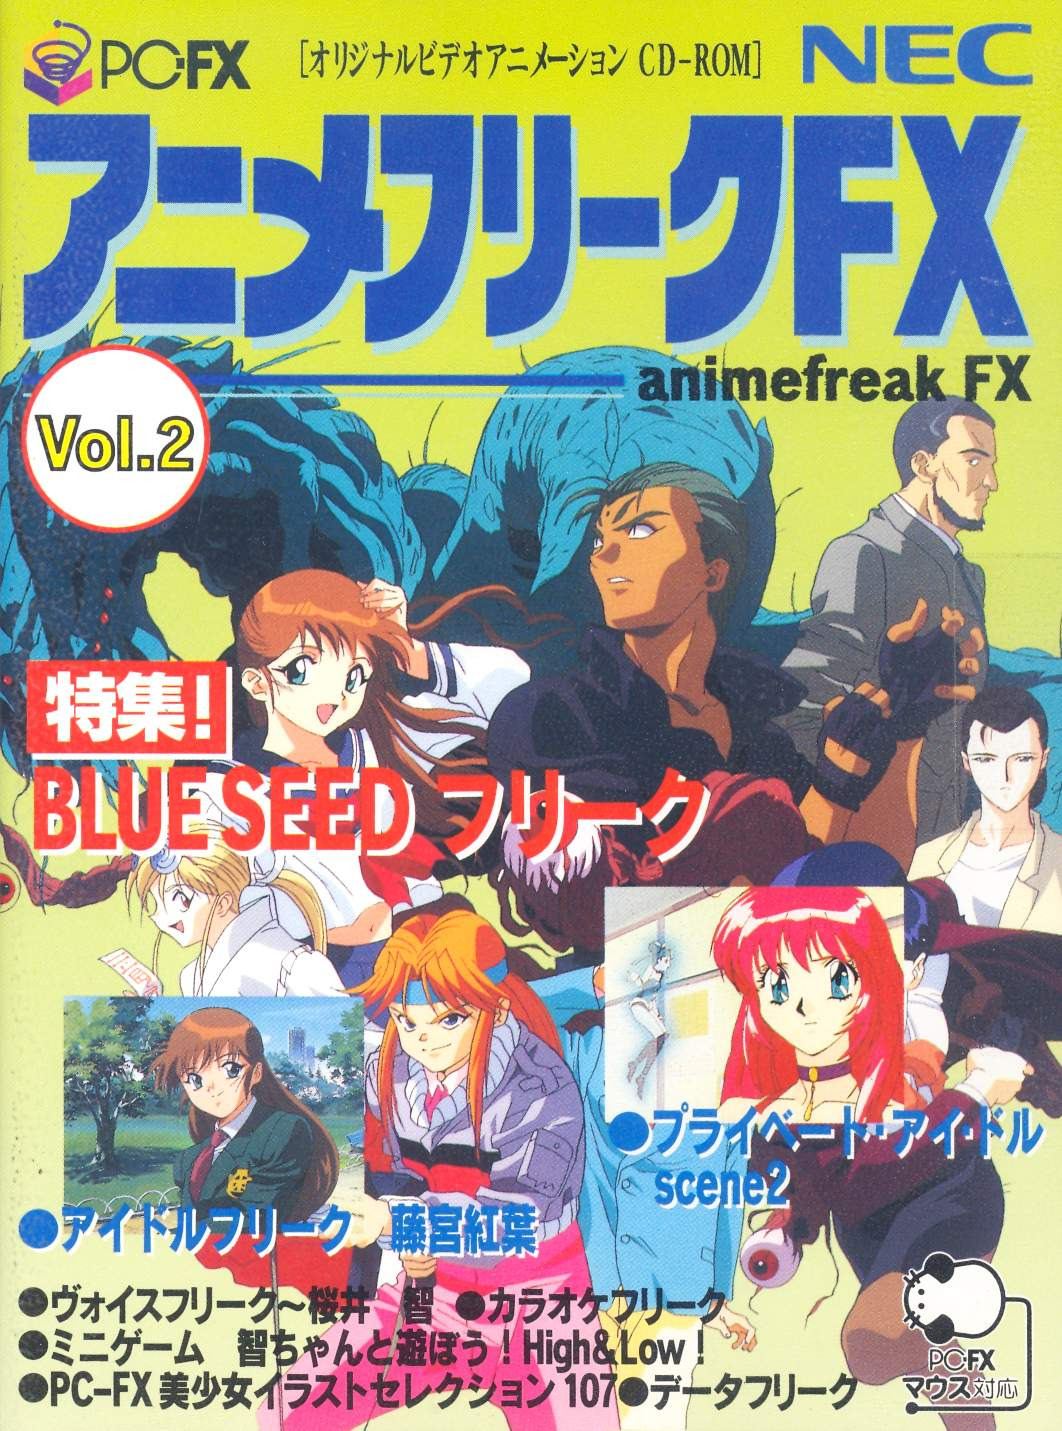 Anime Freak Fx Volume 2 For Pc Fx